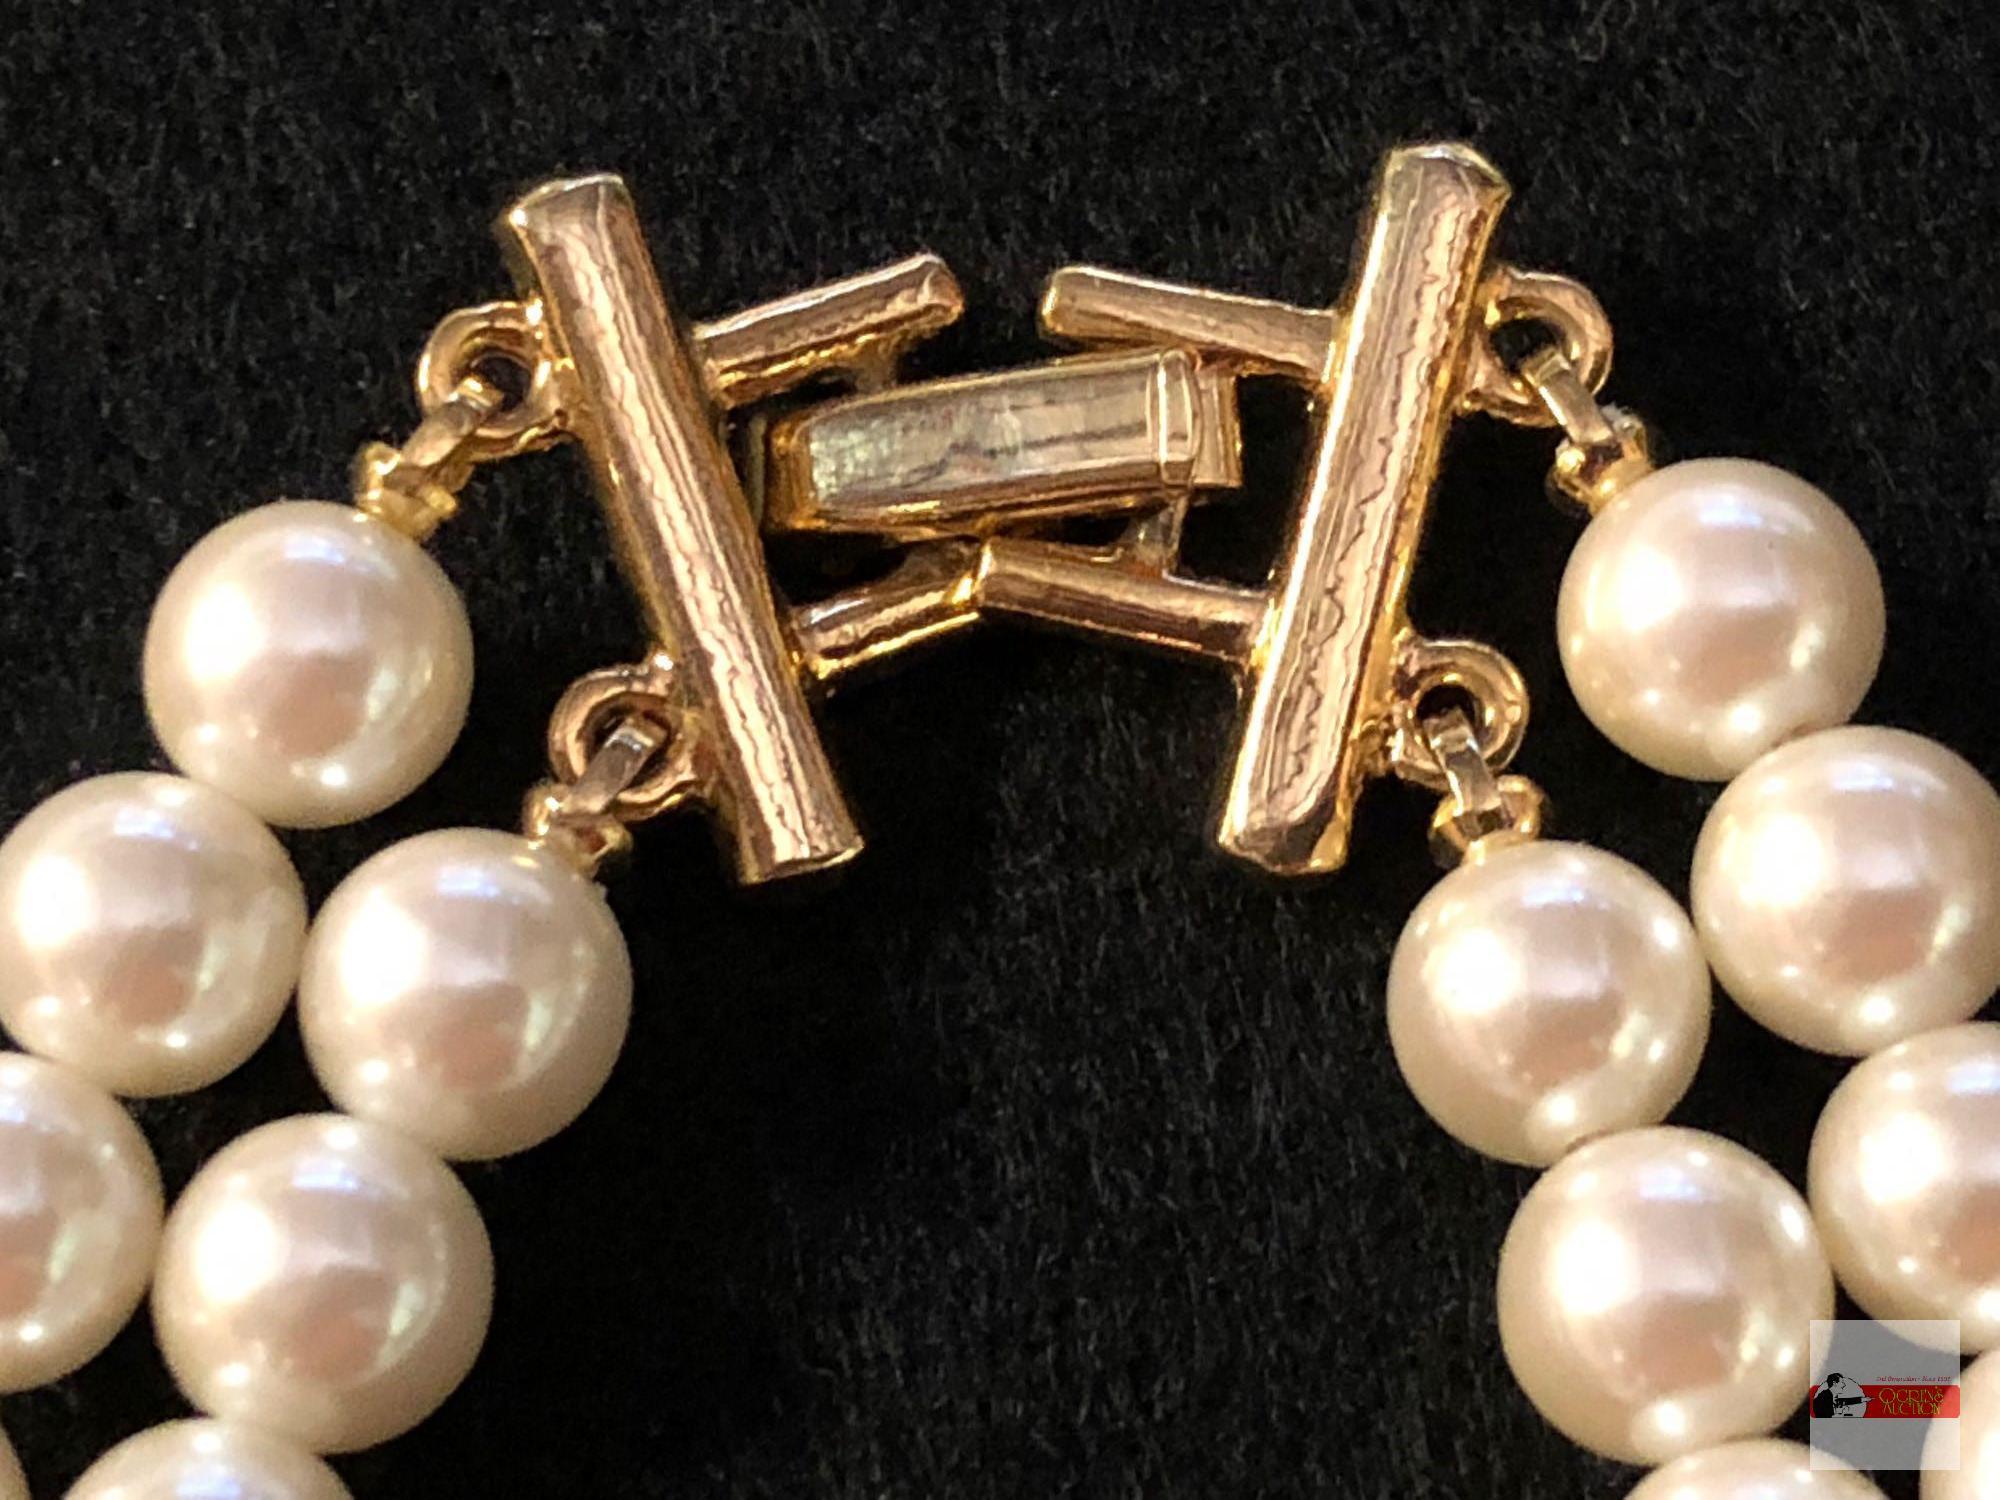 Jewelry - Necklaces, 3